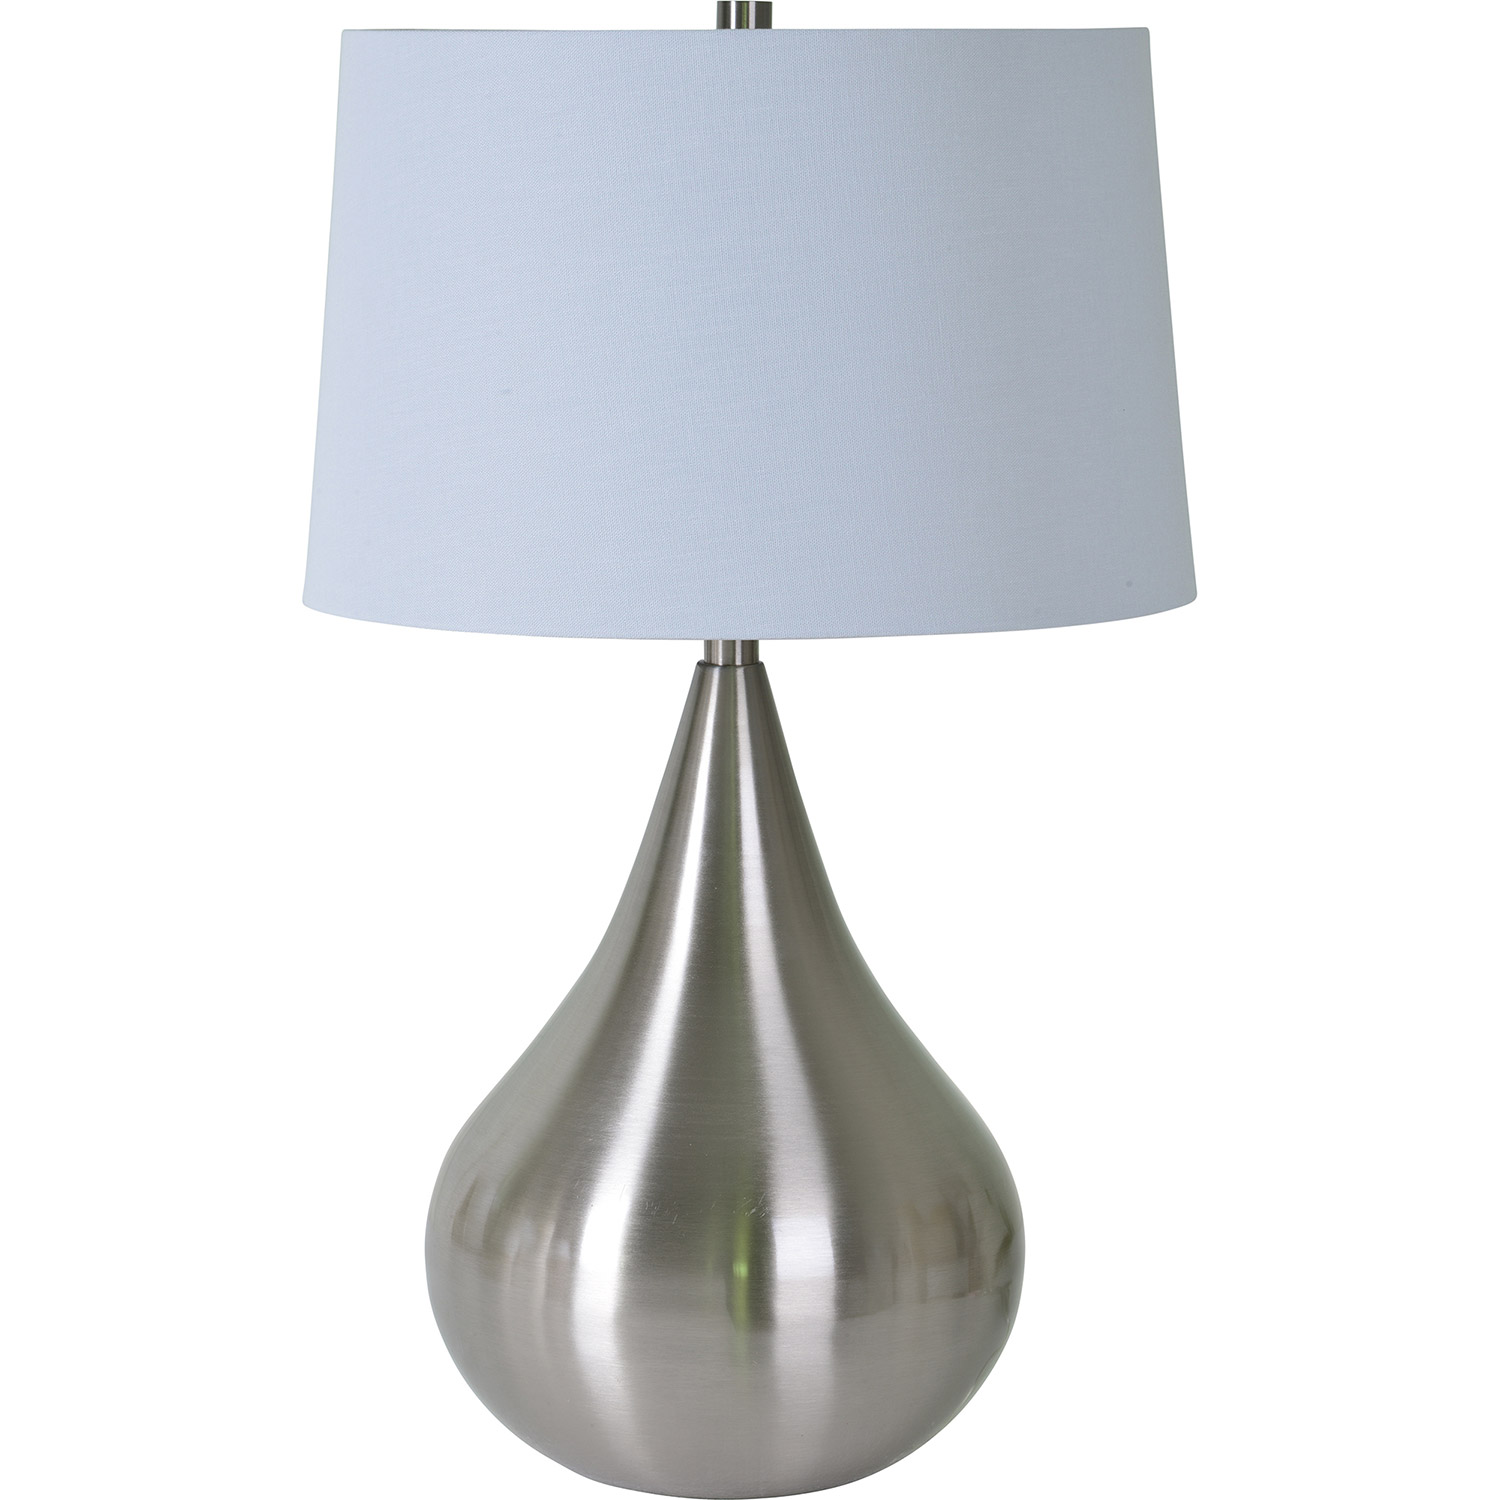 Ren-Wil Sandon Table Lamp - Brushed Nickel